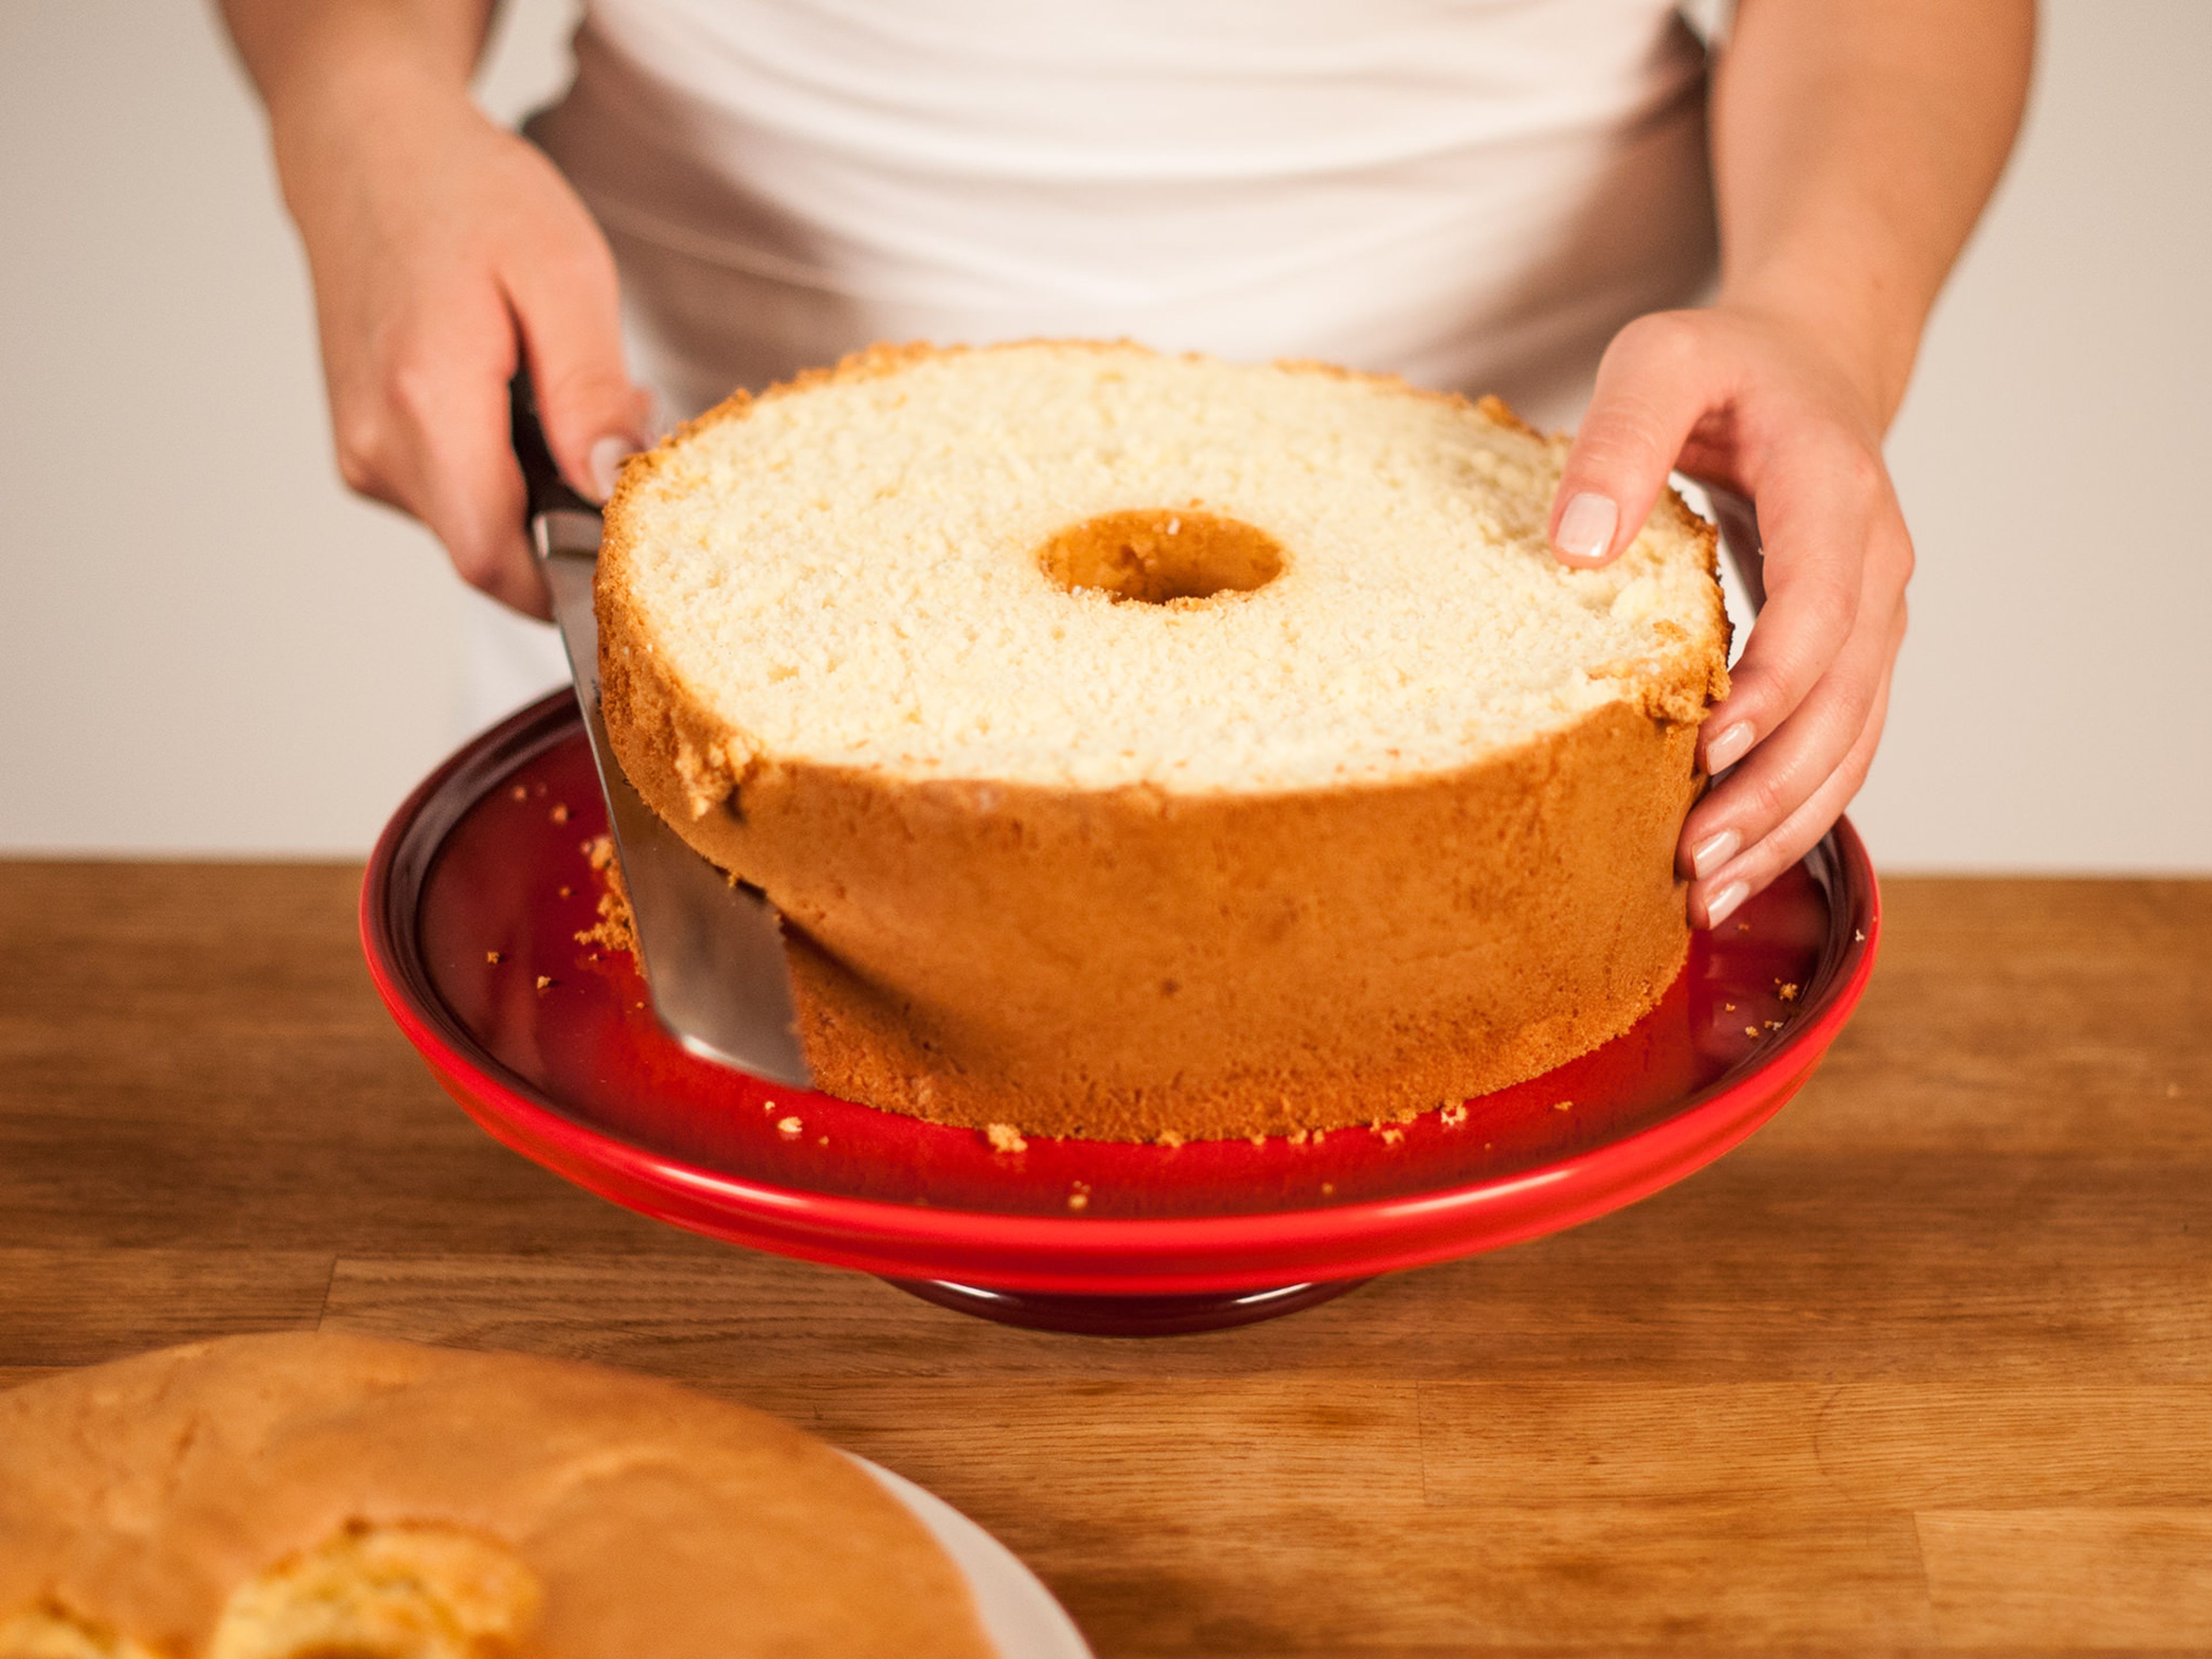 Mit einem Messer am Rand der Backform entlangfahren. Den Kuchen vorsichtig aus der Form lösen und mit einem Brotmesser waagerecht in 3 Teile schneiden.